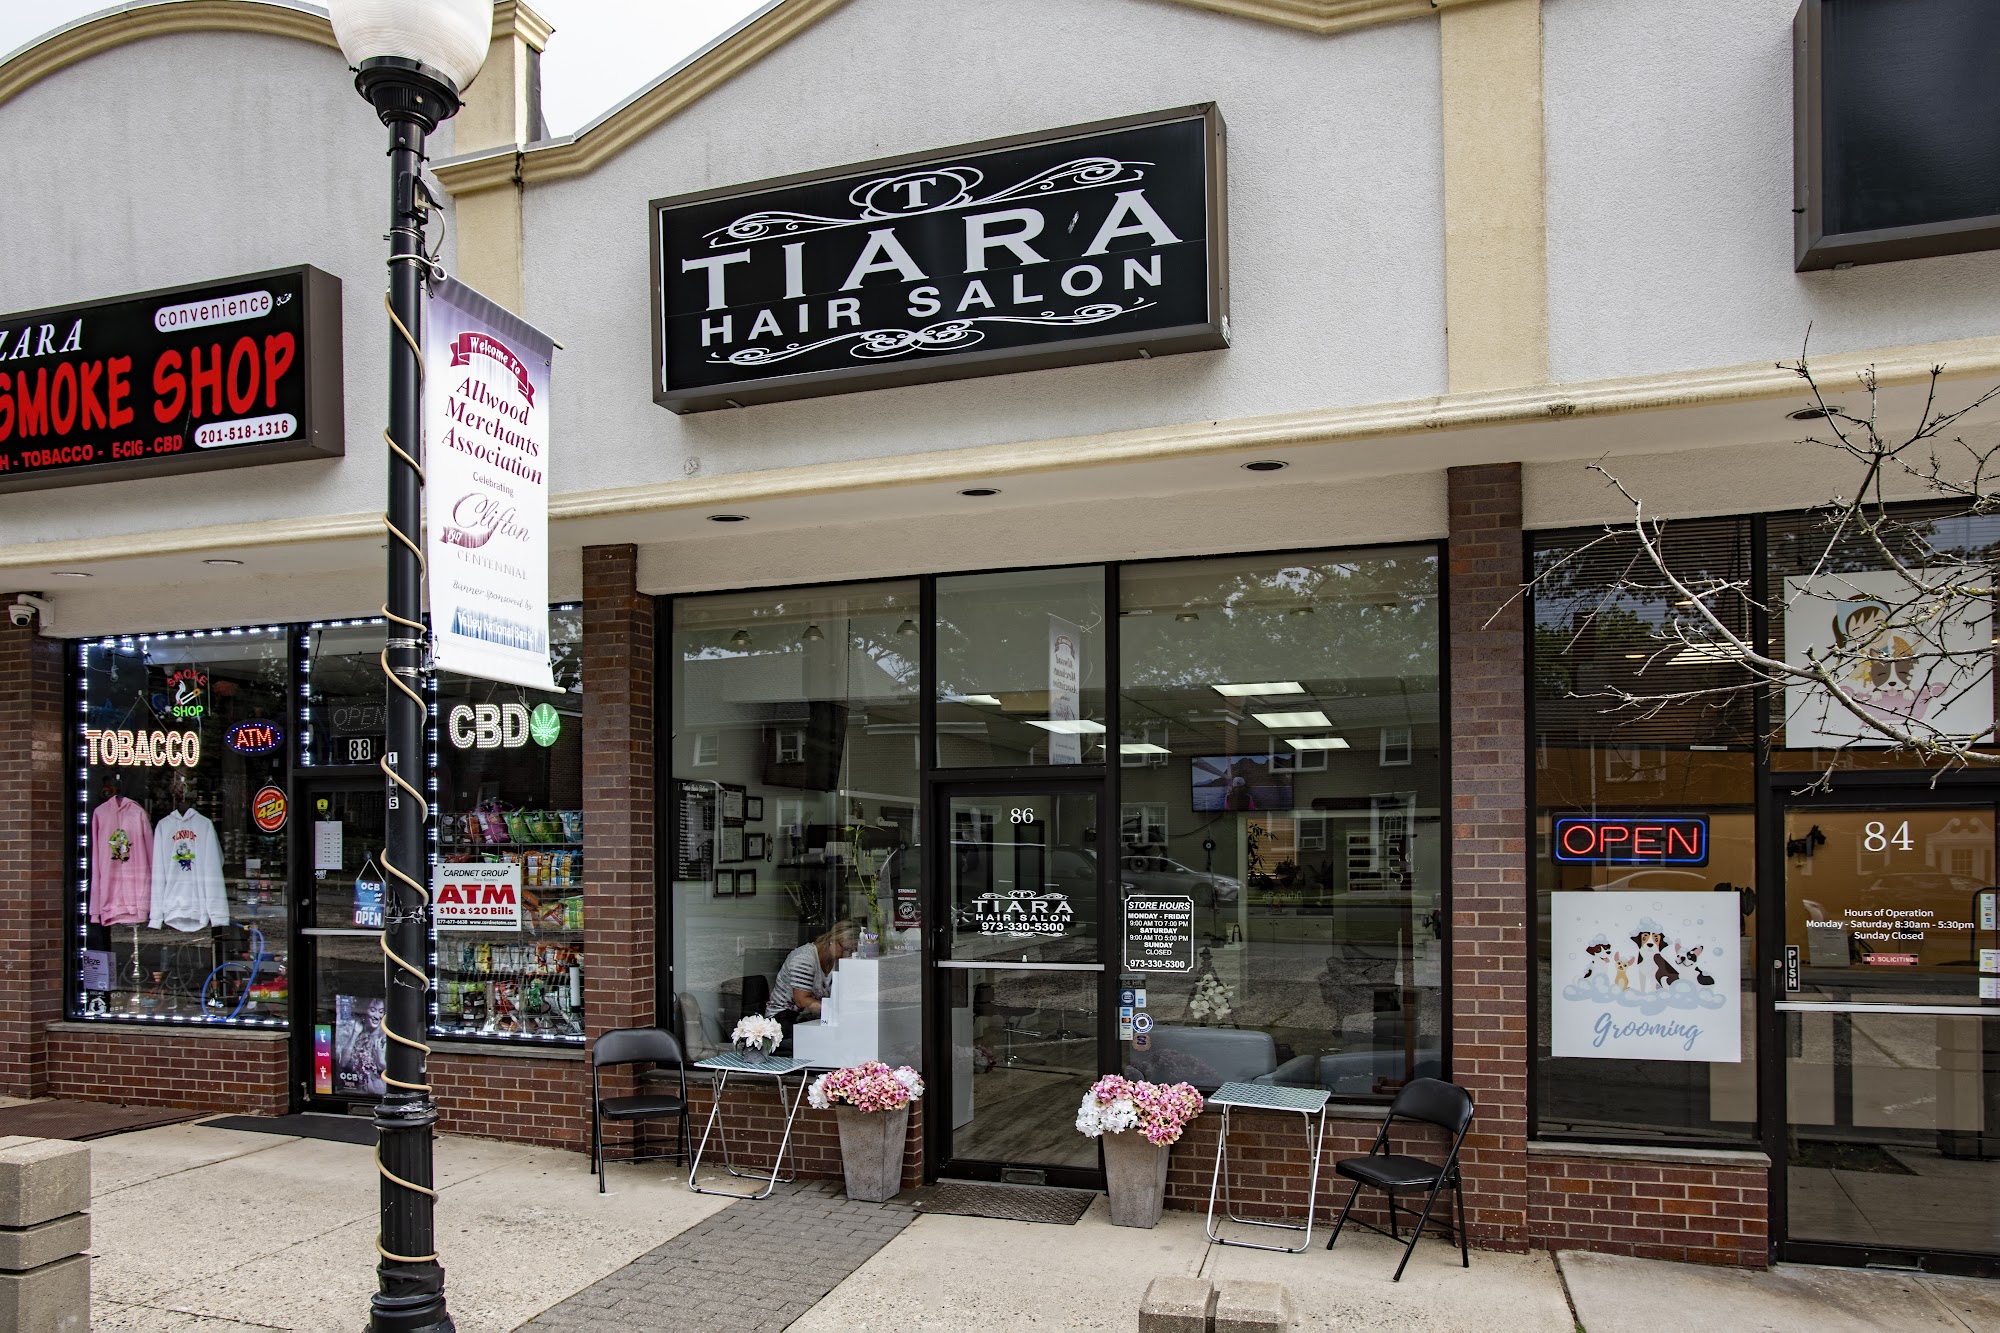 Tiara Hair Salon